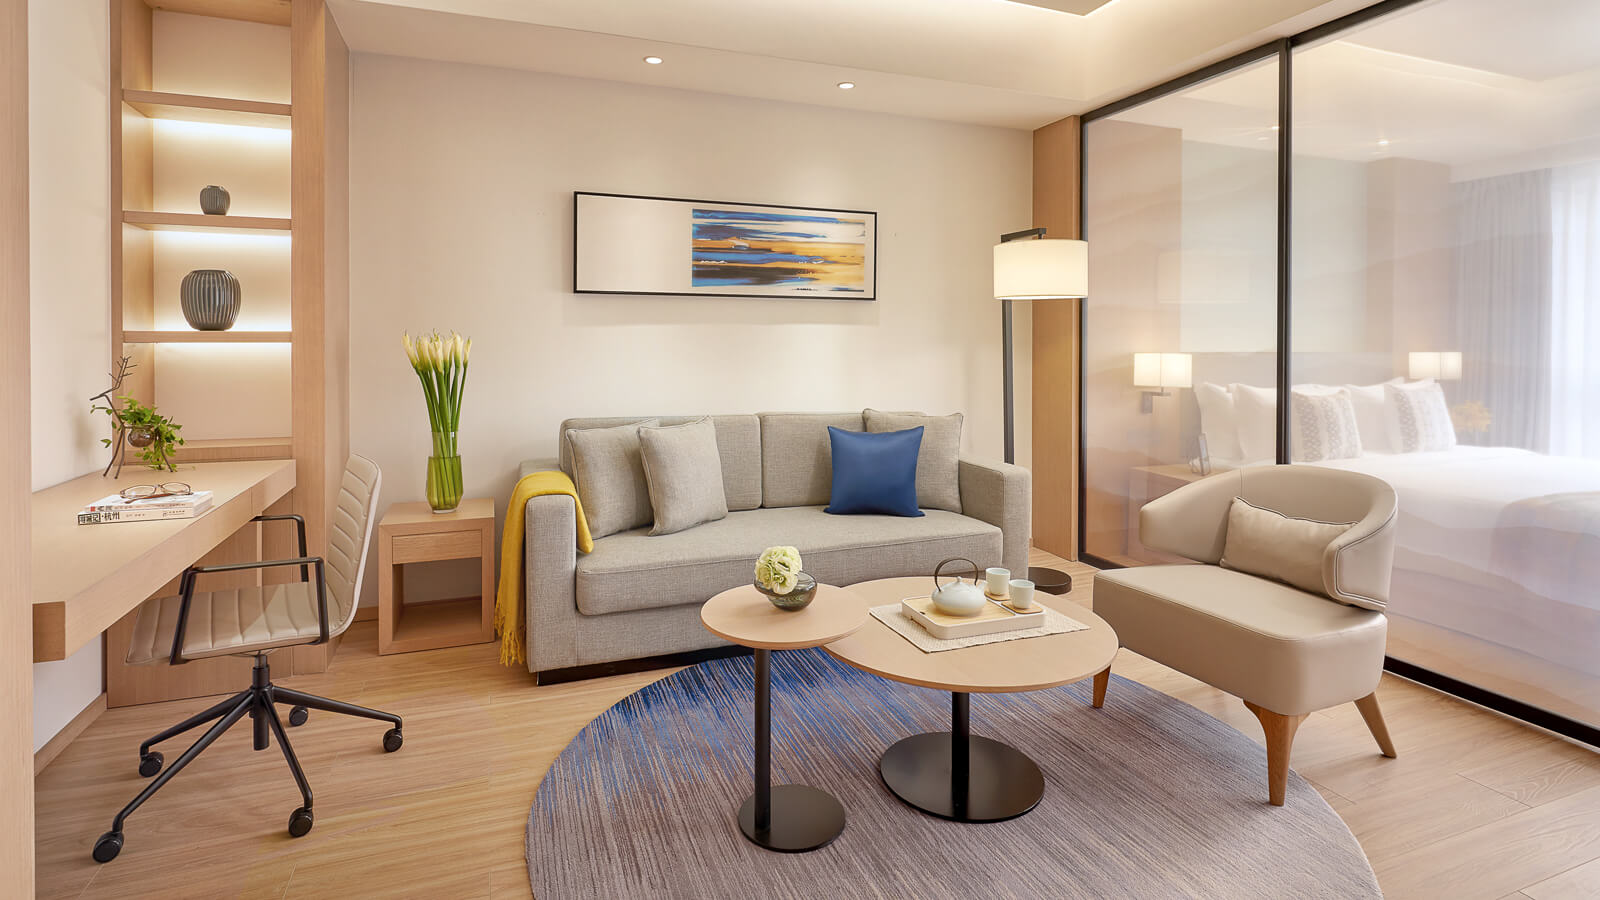 One Bedroom Suite Overview - ชามา เซอร์วิสอพาร์ตเมนท์ จื่อจินกั่ง หางโจว